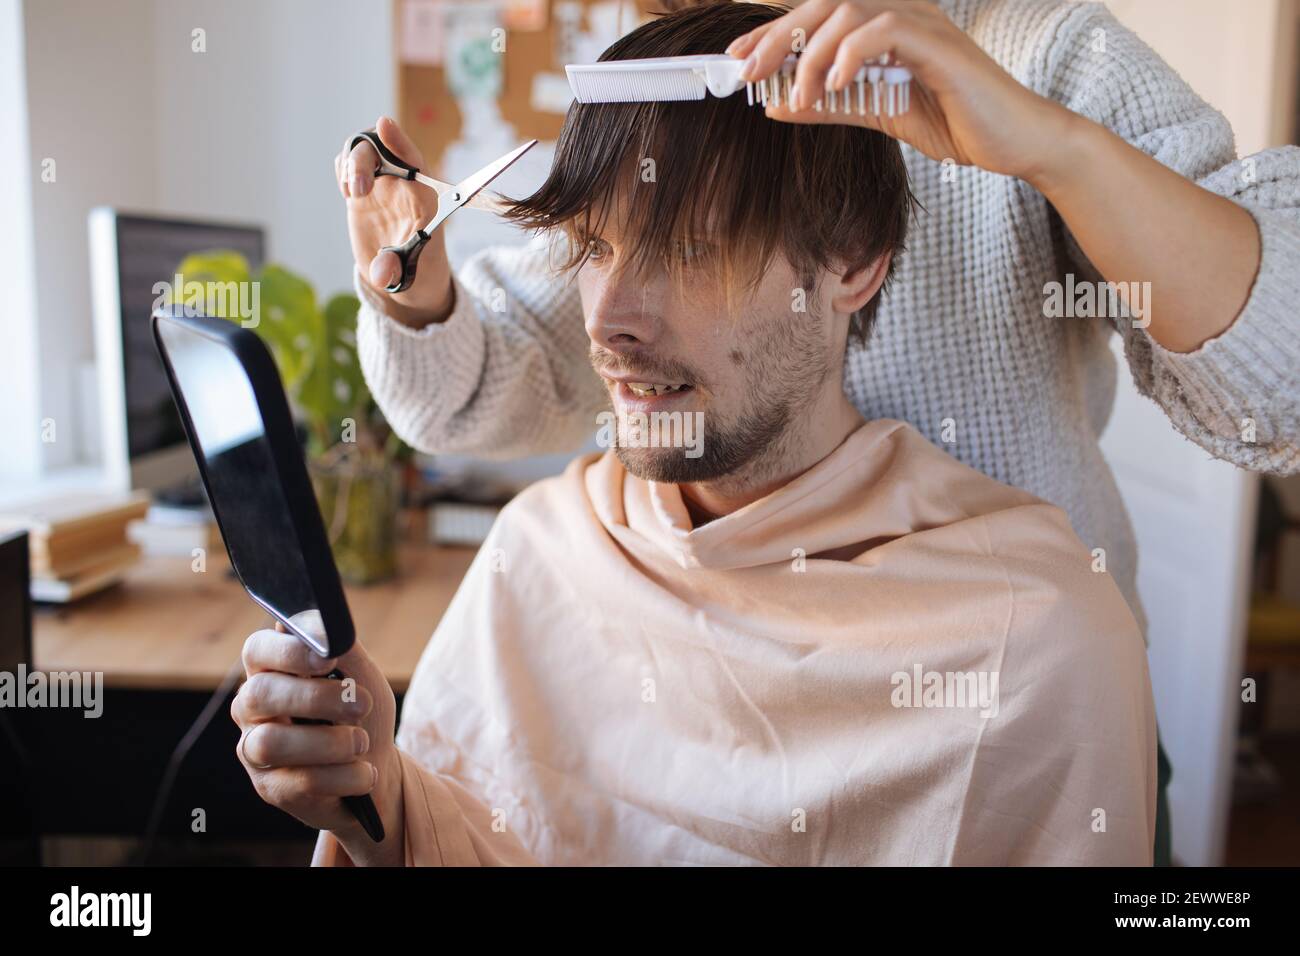 Taglio capelli casa. Uomo che taglia i capelli a casa. Vita in pandemia durante il blocco. Come tagliare i vostri propri capelli quando i parrucchieri sono chiusi. Taglio automatico più semplice Foto Stock